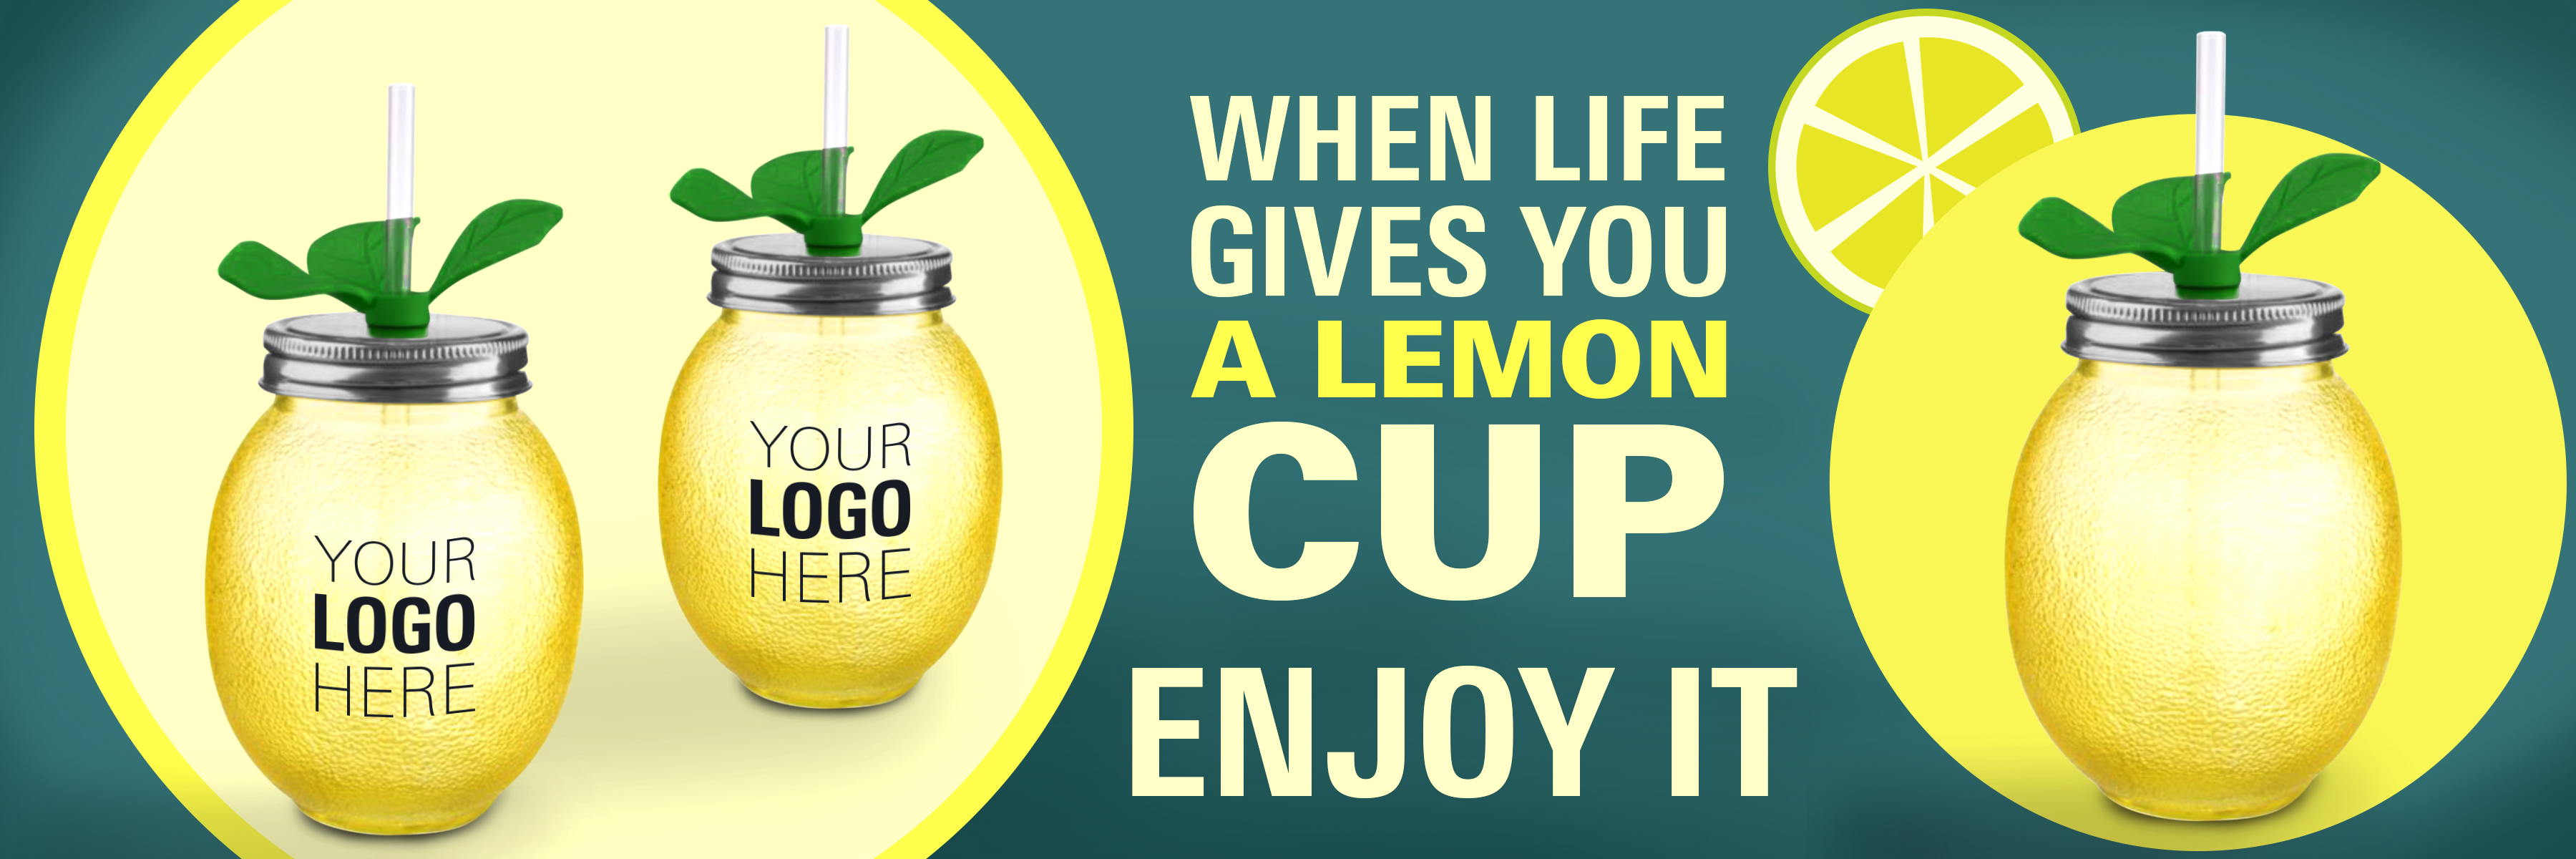 lemon cup